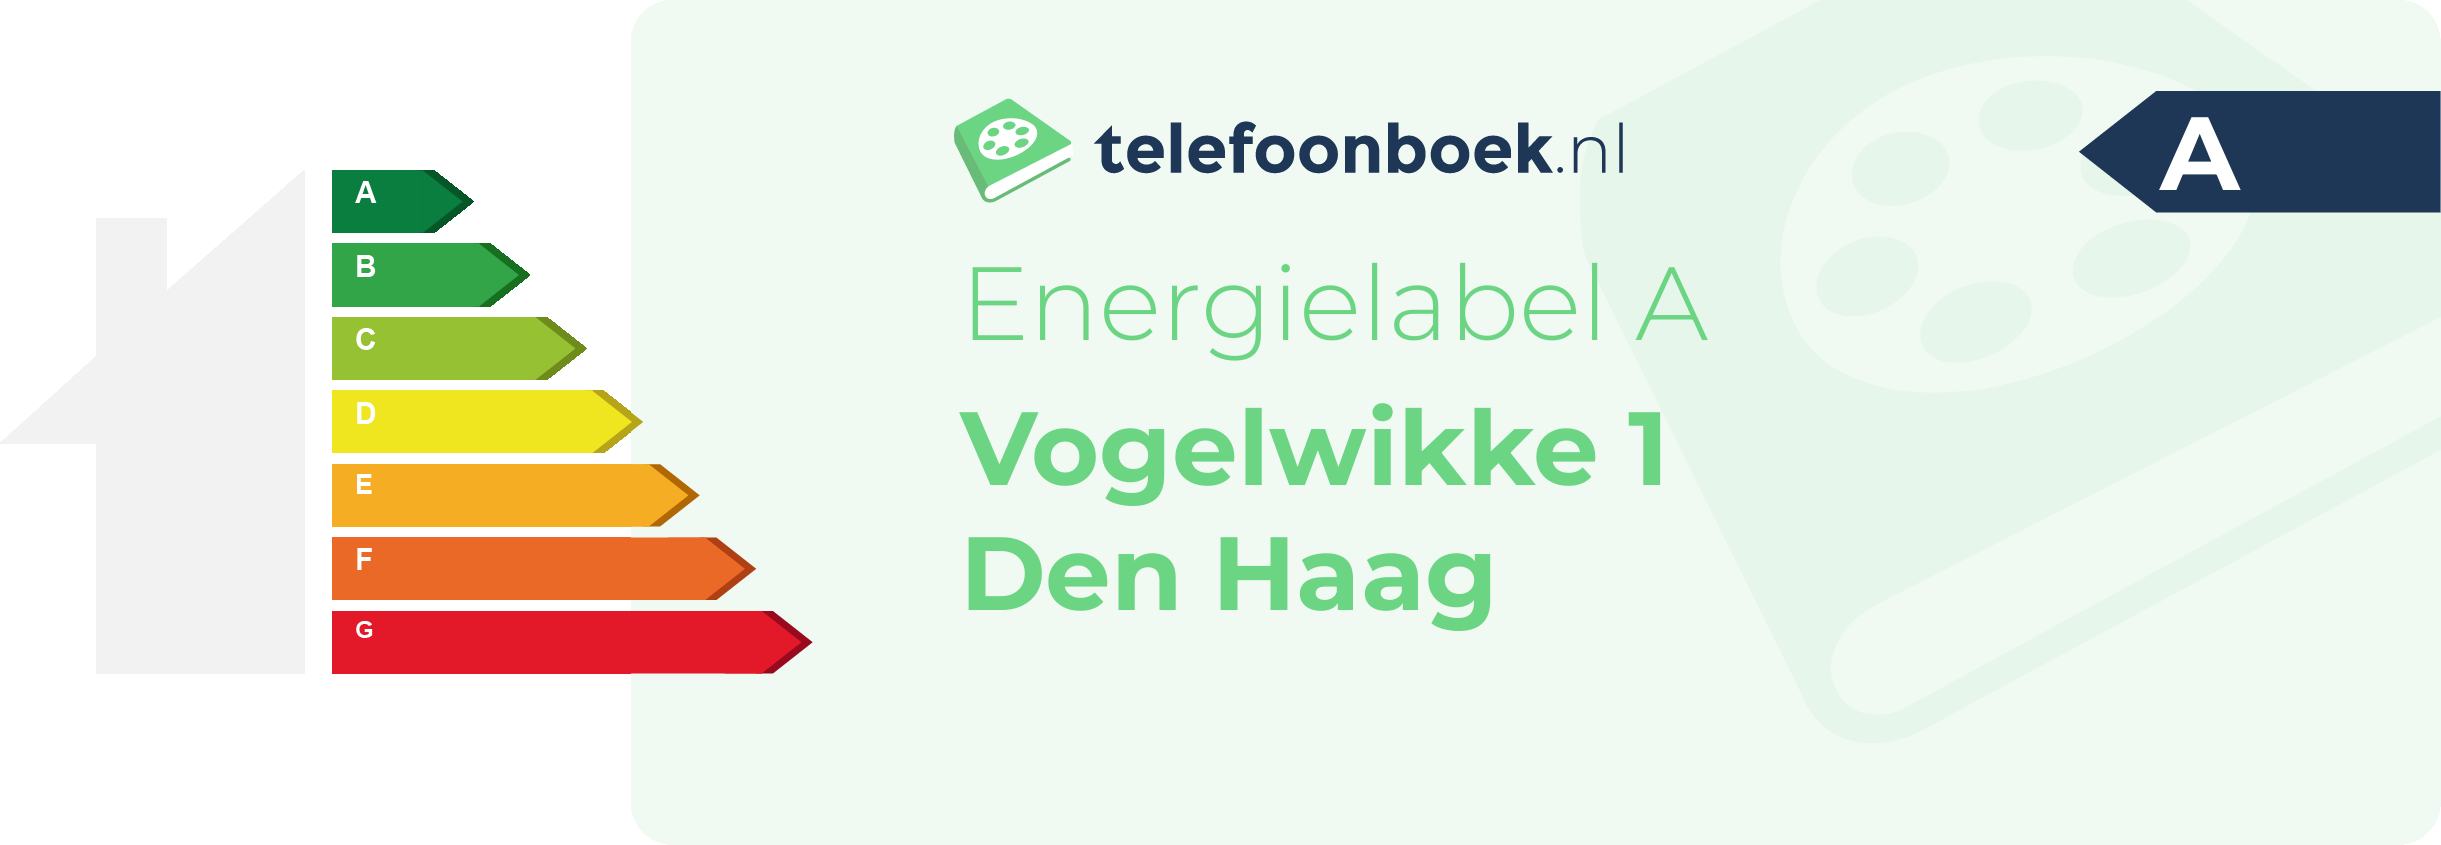 Energielabel Vogelwikke 1 Den Haag